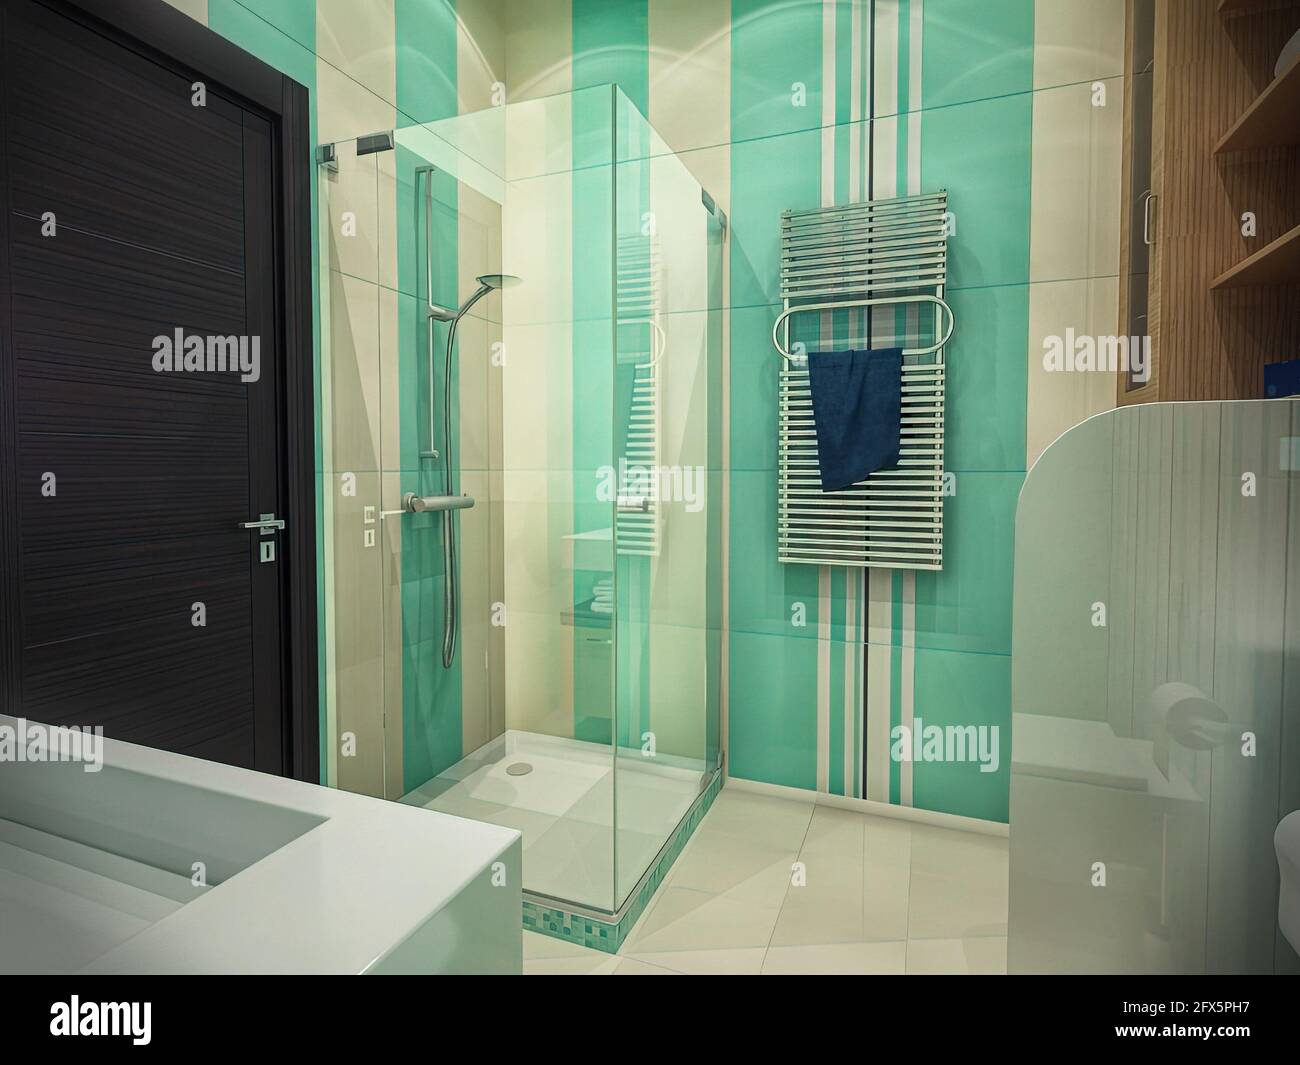 illustrazione 3d del design interno di un bagno con doccia. Concetto di stanza da bagno in colori menta Foto Stock